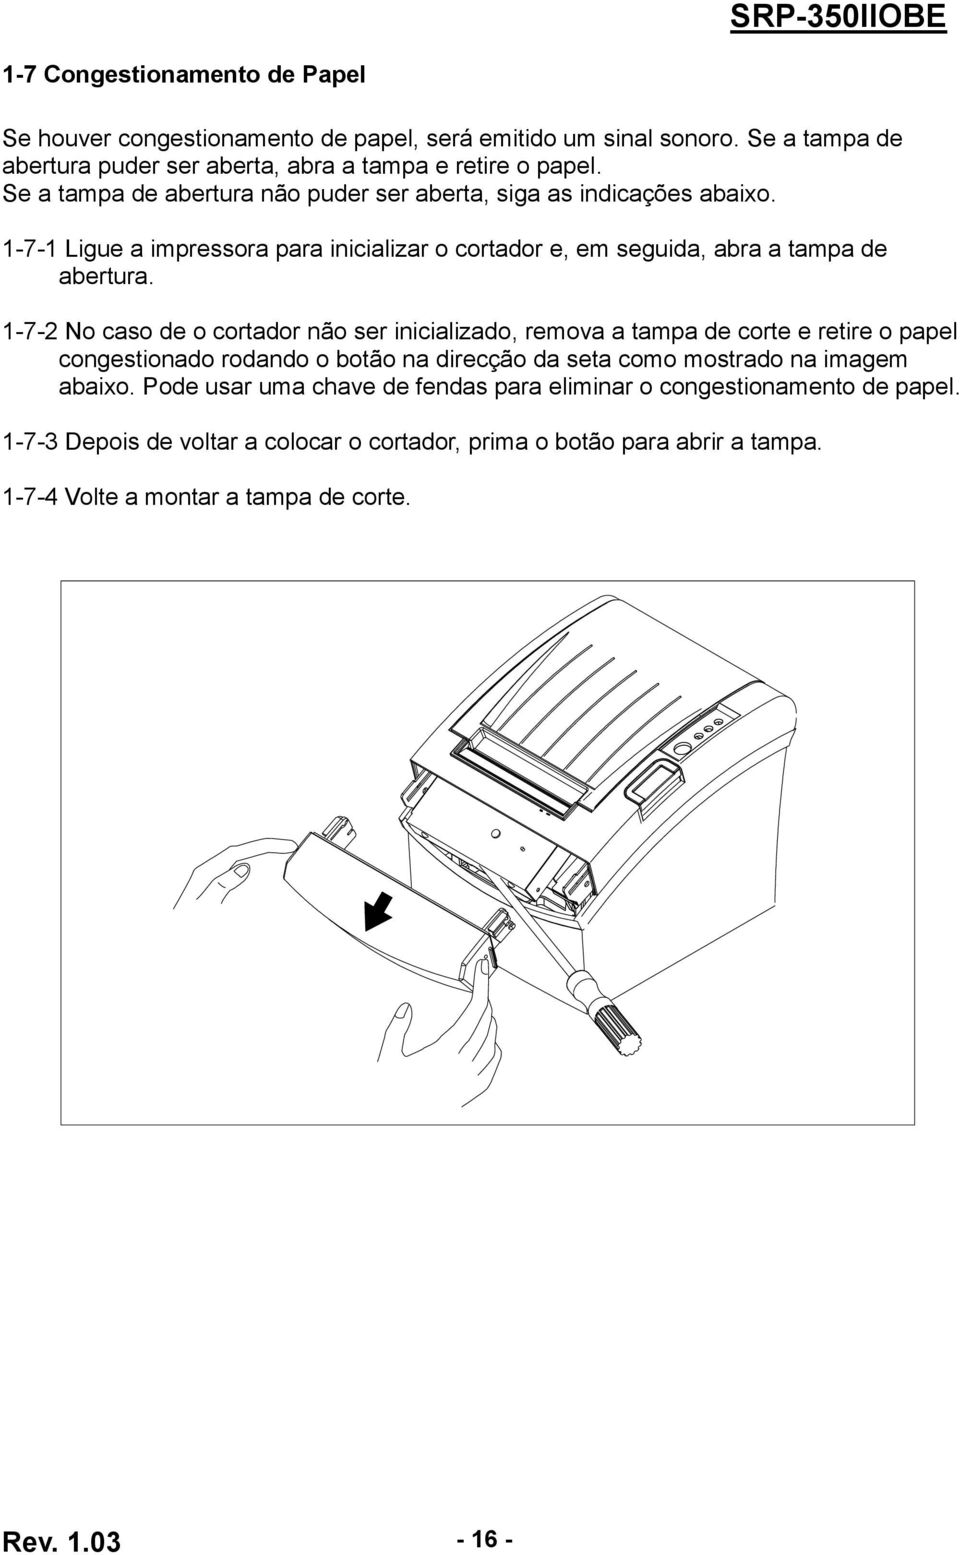 1-7-2 No caso de o cortador não ser inicializado, remova a tampa de corte e retire o papel congestionado rodando o botão na direcção da seta como mostrado na imagem abaixo.